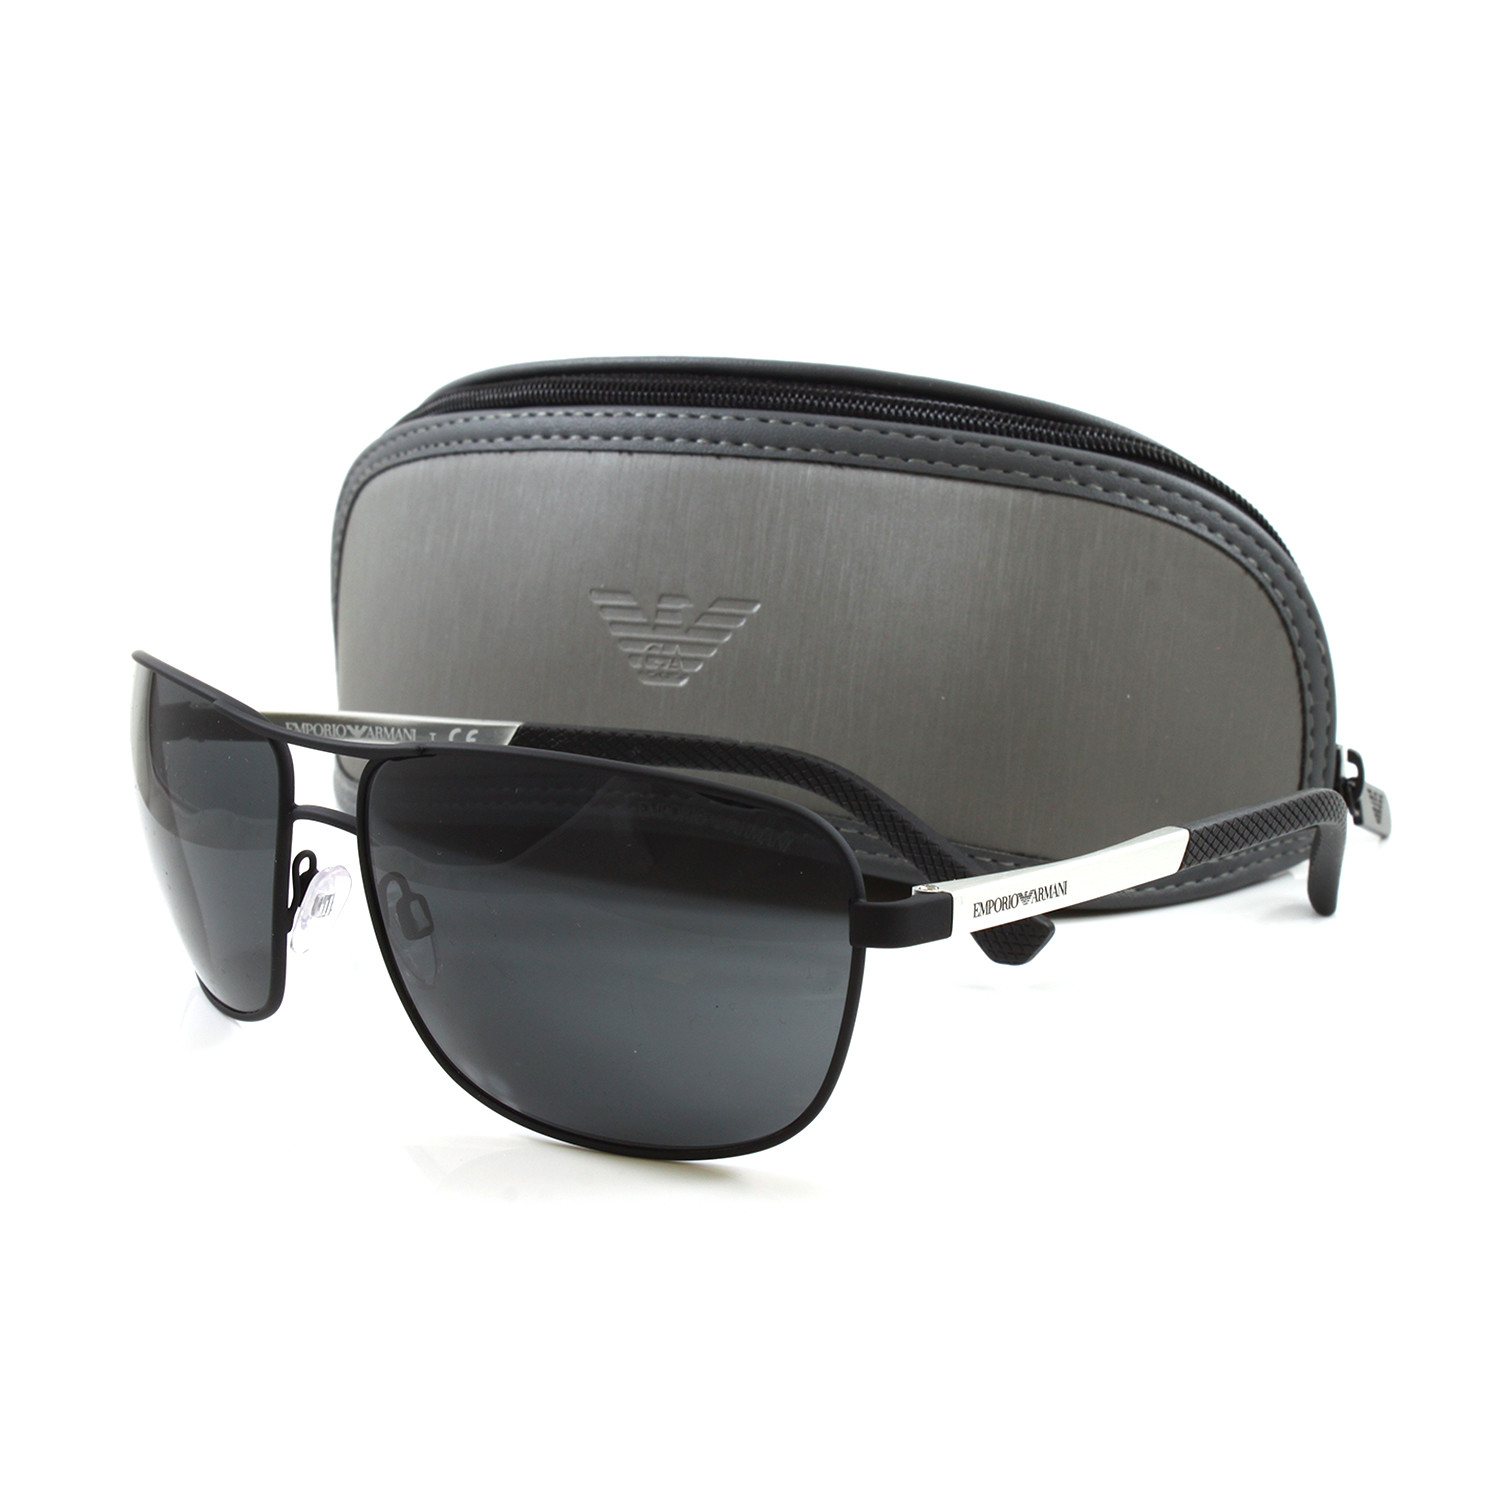 Emporio Armani // Men's EA2033 Sunglasses // Black - Emporio Armani ...